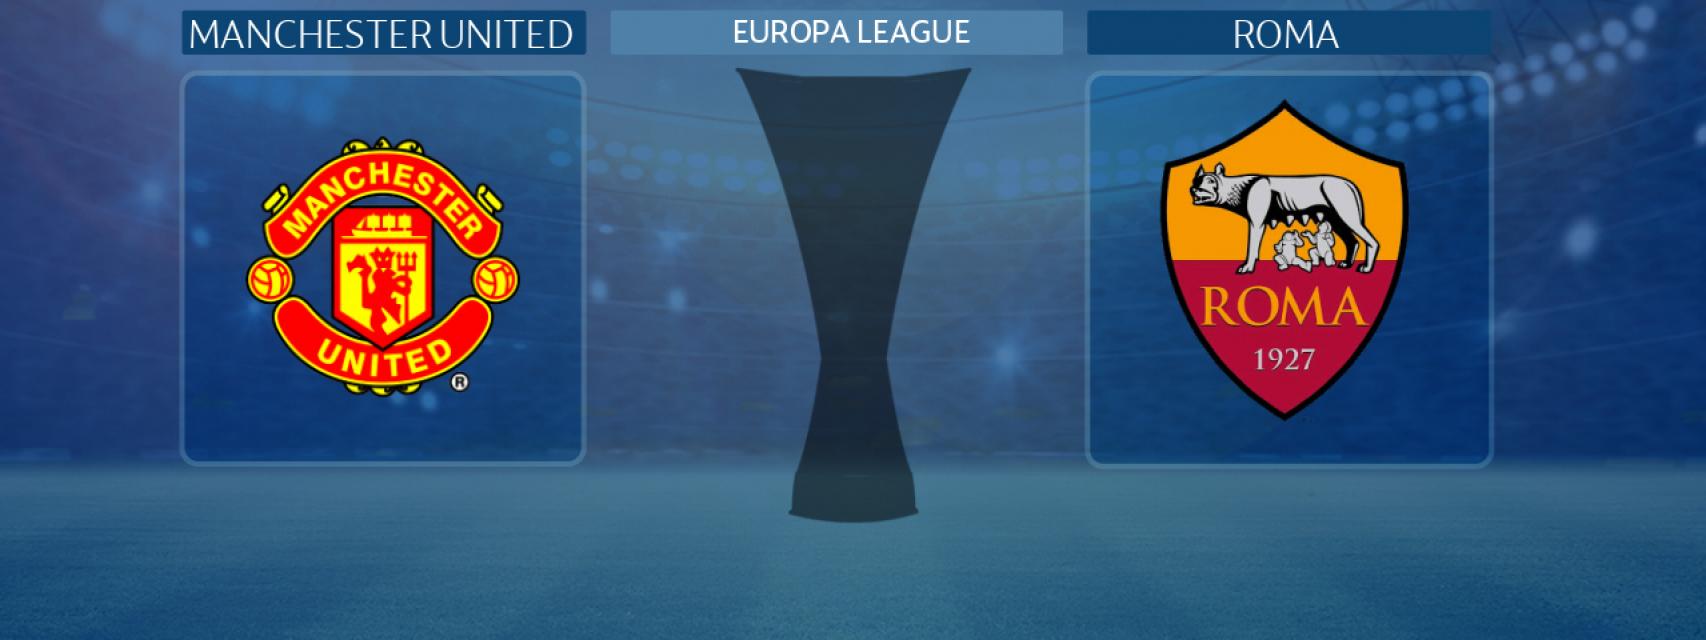 Manchester United - Roma, partido de la Europa League